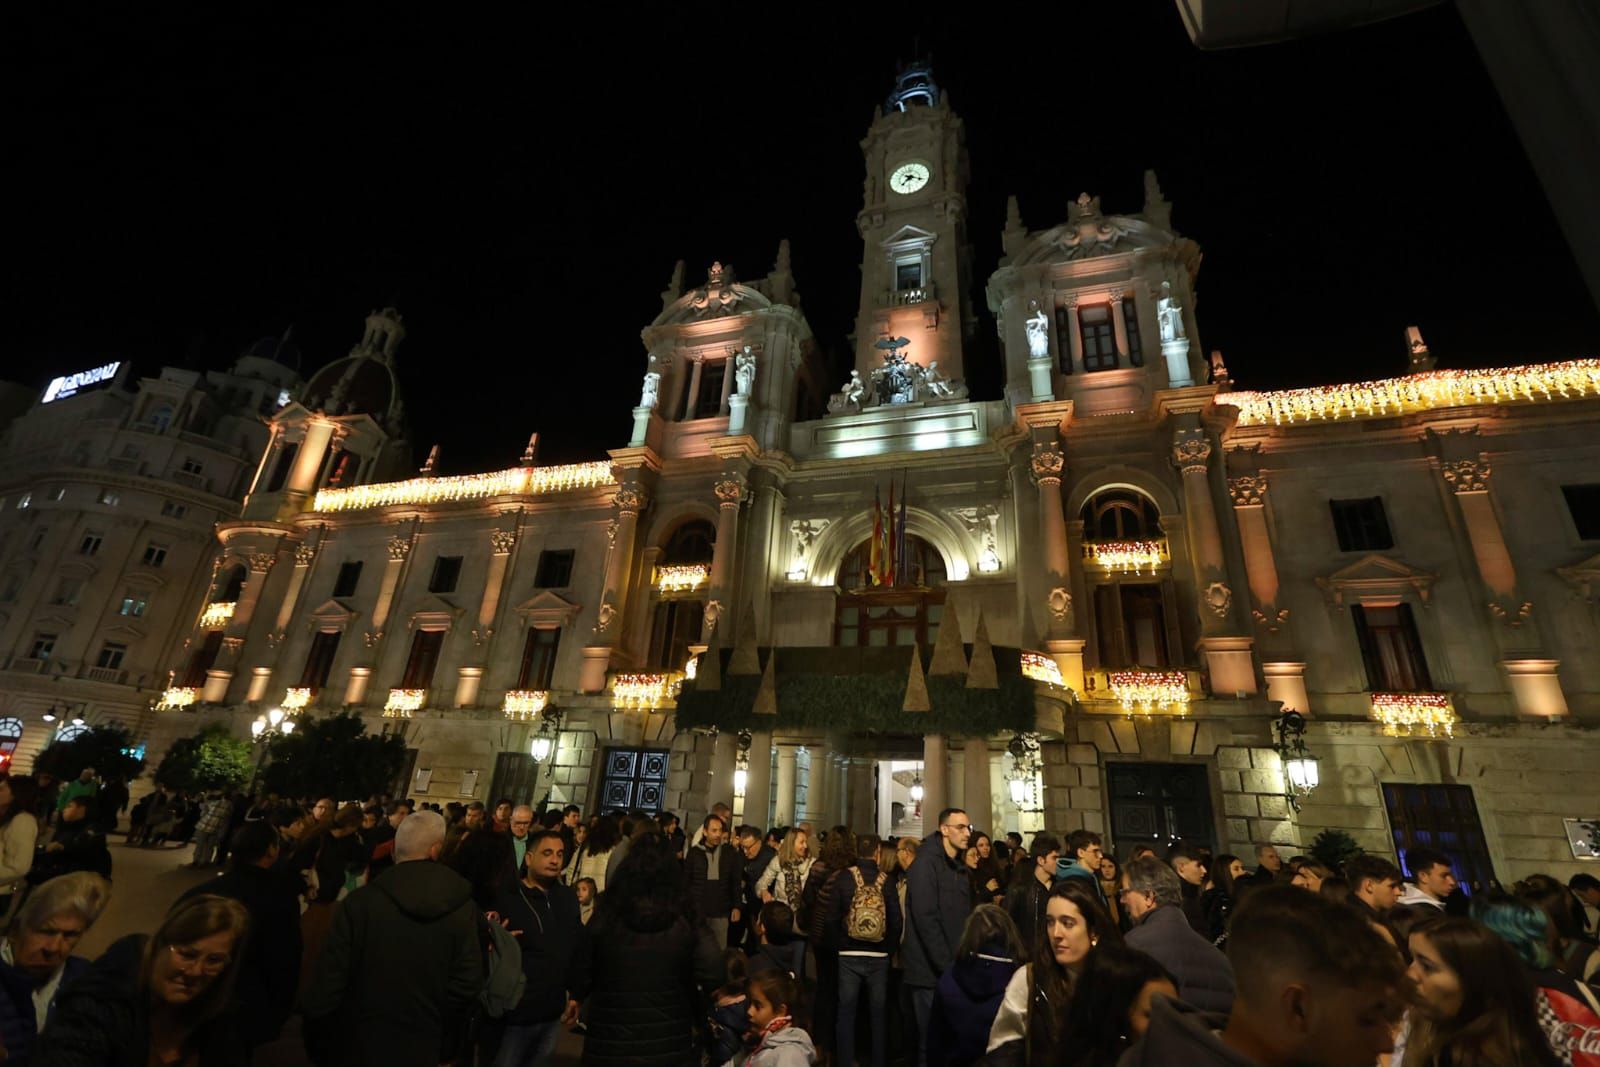 El centro de València, a reventar de gente por la decoración de Navidad